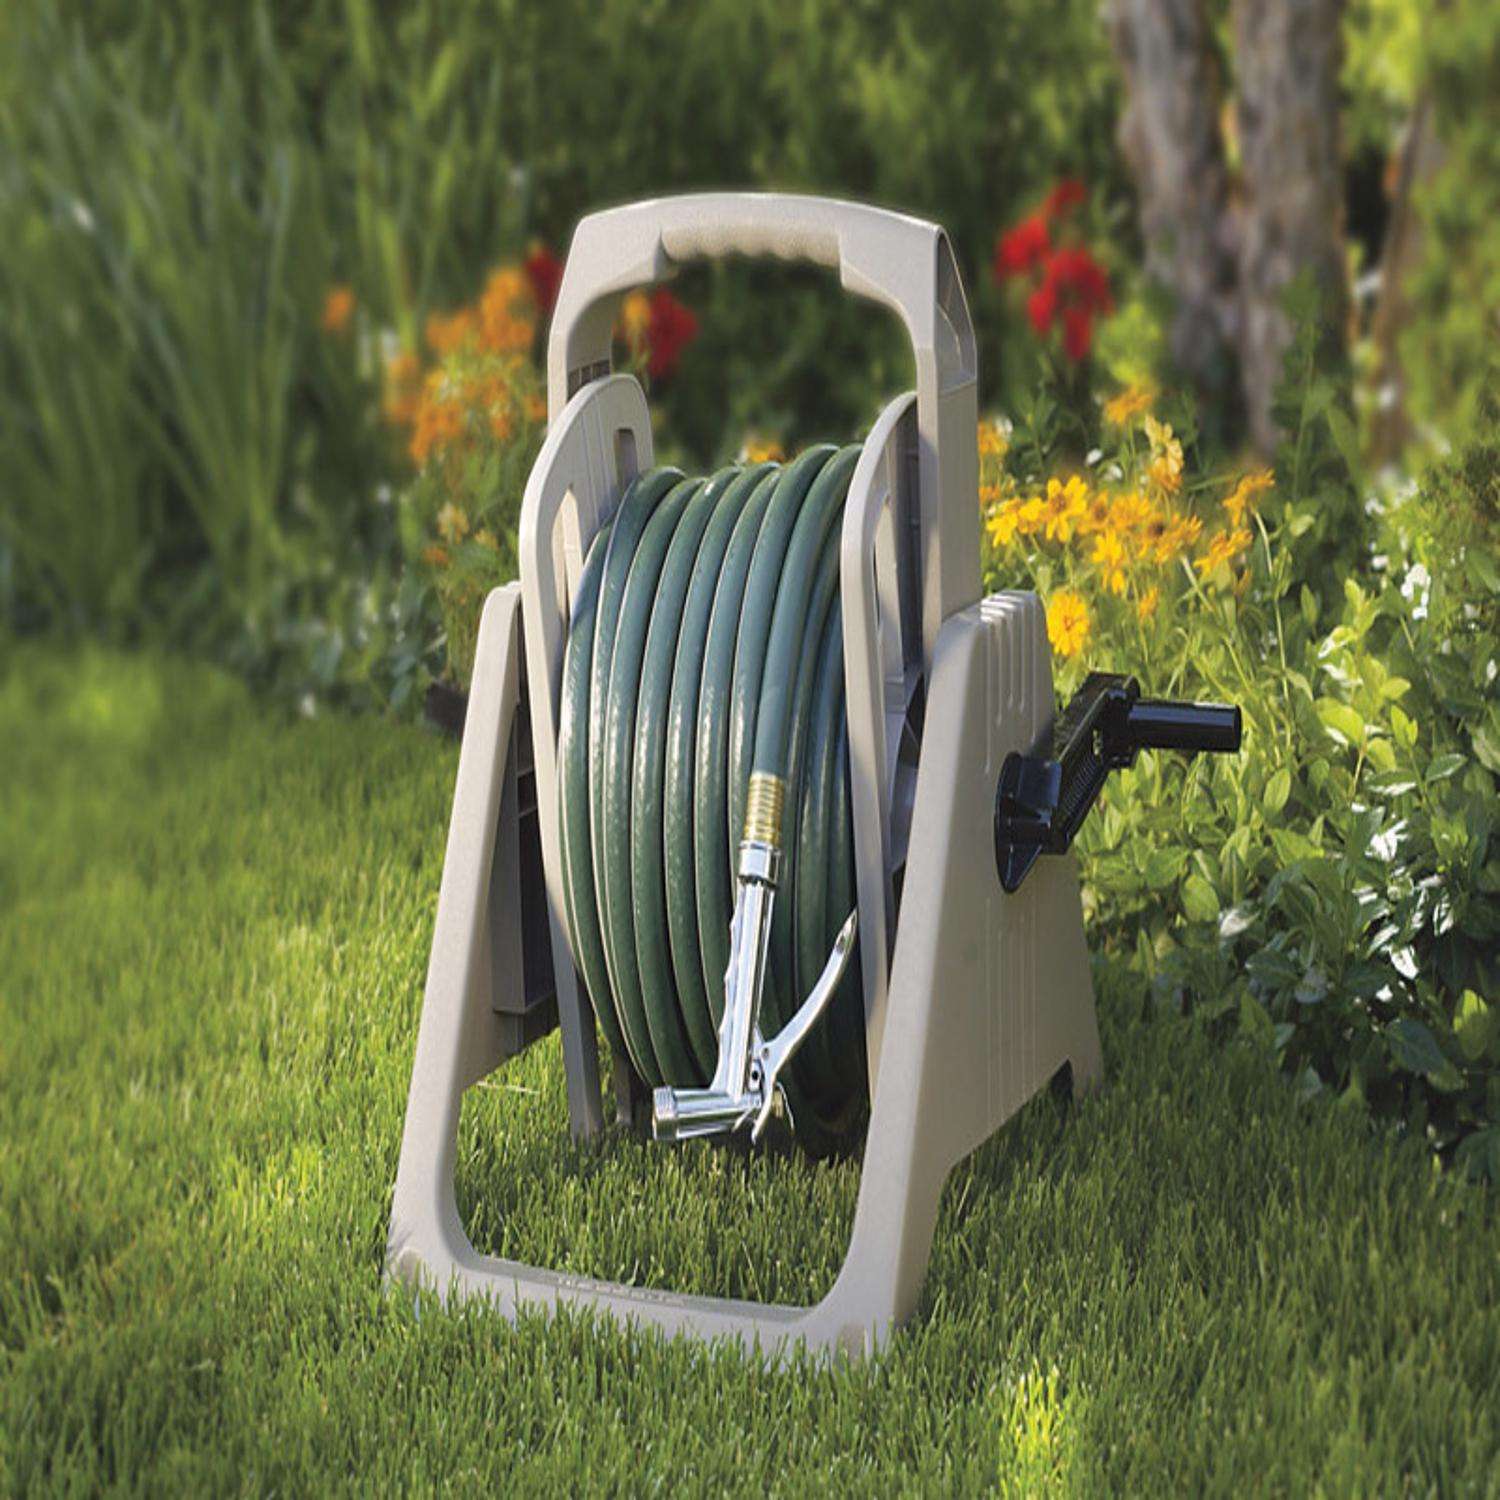 Buy 50 Feet Garden Water Hose Reel Online